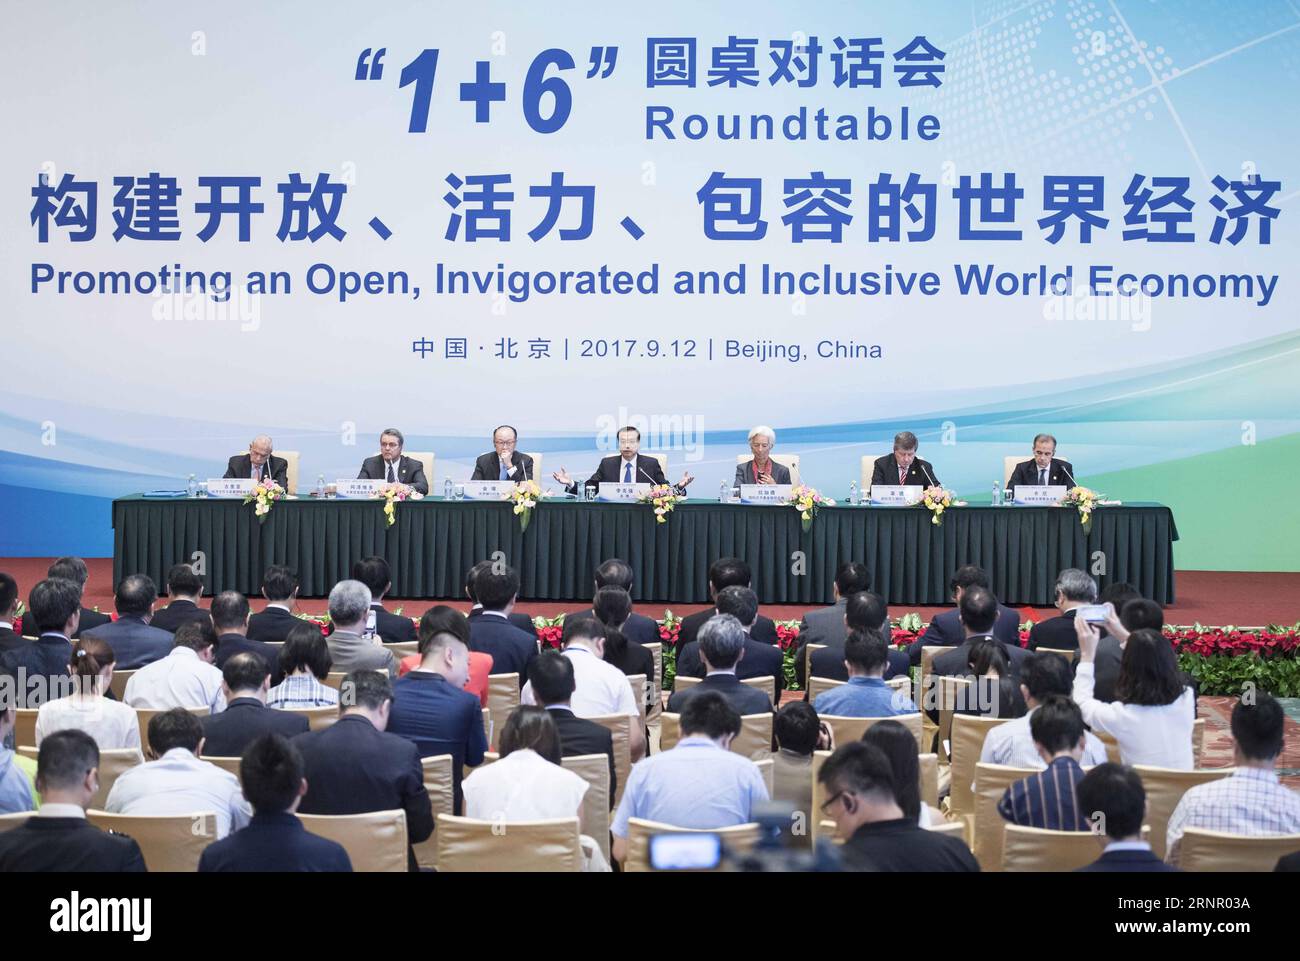 (170912) -- PECHINO, 12 settembre 2017 -- il Premier cinese li Keqiang e i capi delle principali istituzioni economiche internazionali partecipano a una conferenza stampa congiunta dopo la riunione della tavola rotonda 1+6 a Pechino, capitale della Cina, 12 settembre 2017. Li, insieme con il presidente del gruppo della Banca Mondiale (WBG) Jim Yong Kim, il direttore generale del Fondo monetario Internazionale (FMI) Christine Lagarde, il direttore generale dell'Organizzazione Mondiale del commercio (OMC) Roberto Azevedo, il direttore generale dell'Organizzazione Internazionale del lavoro (ILO) Guy Ryder, il segretario generale dell'Organizzazione per la cooperazione e lo sviluppo economico (OCSE) Angel Gurria e Fina Foto Stock